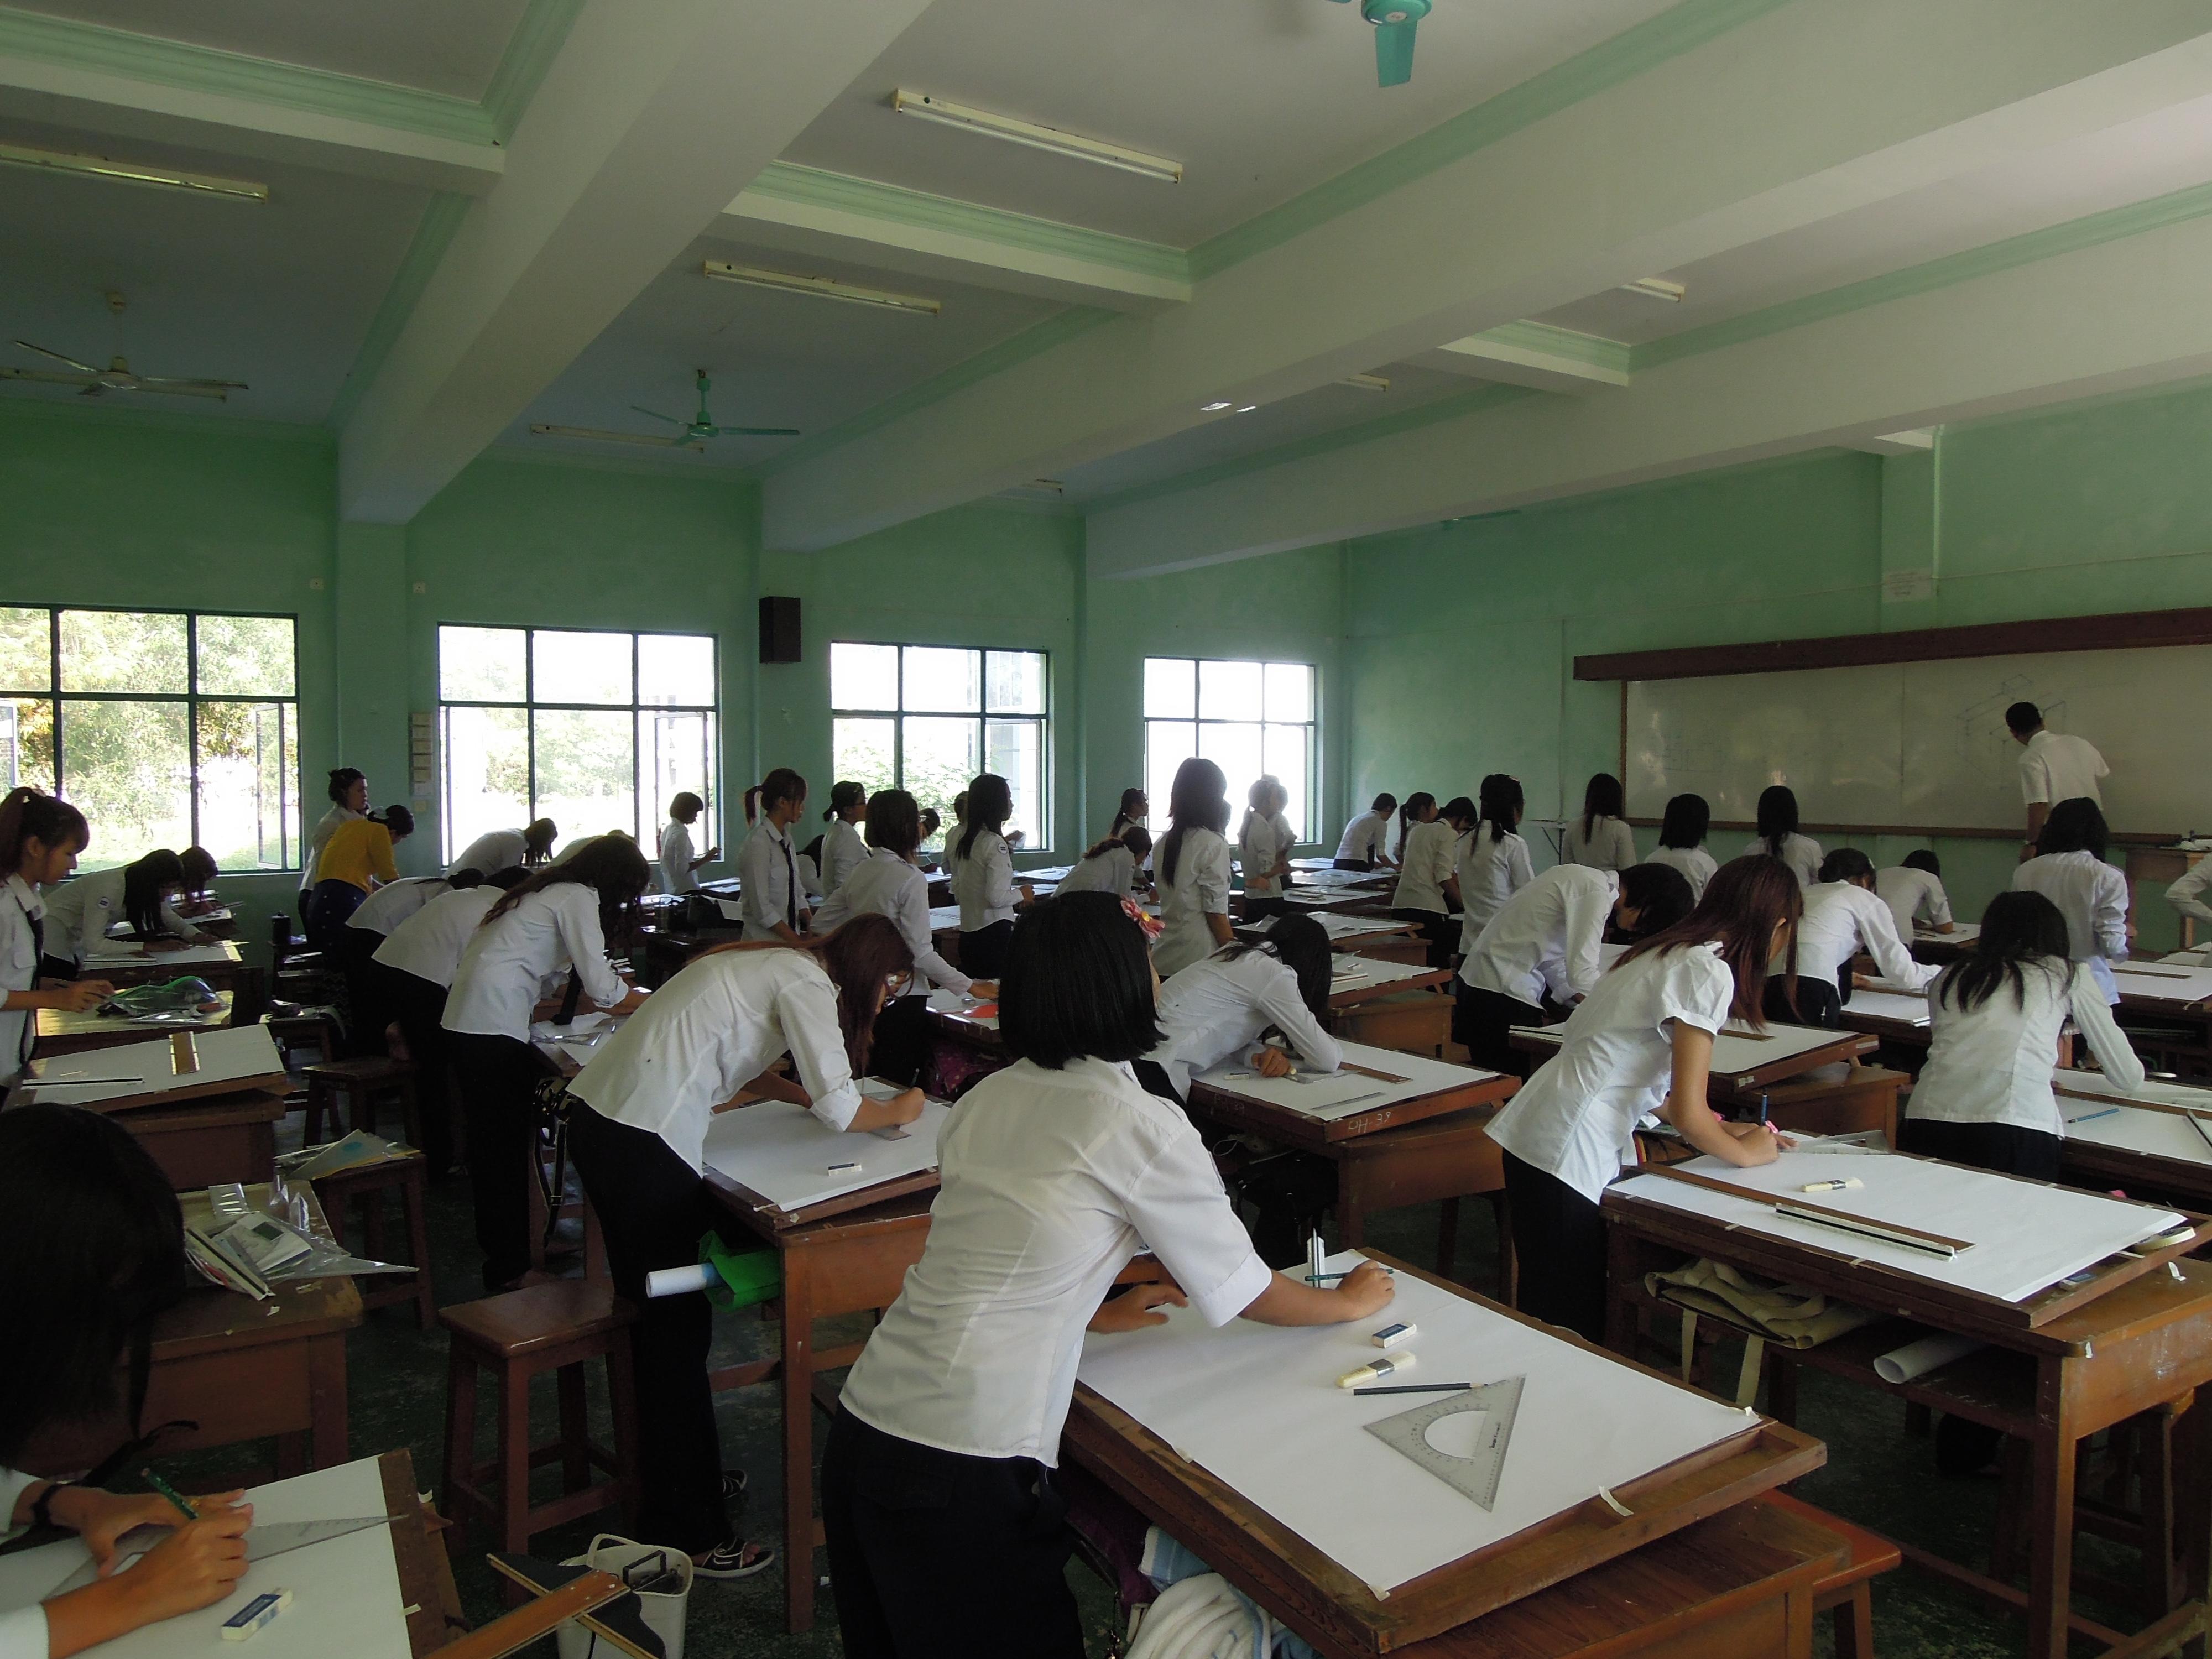 Lekcja rysunku w Akademii Morskiej w Yangoonie. W klasie niemal same kobiety!, fot. M. Lehrmann